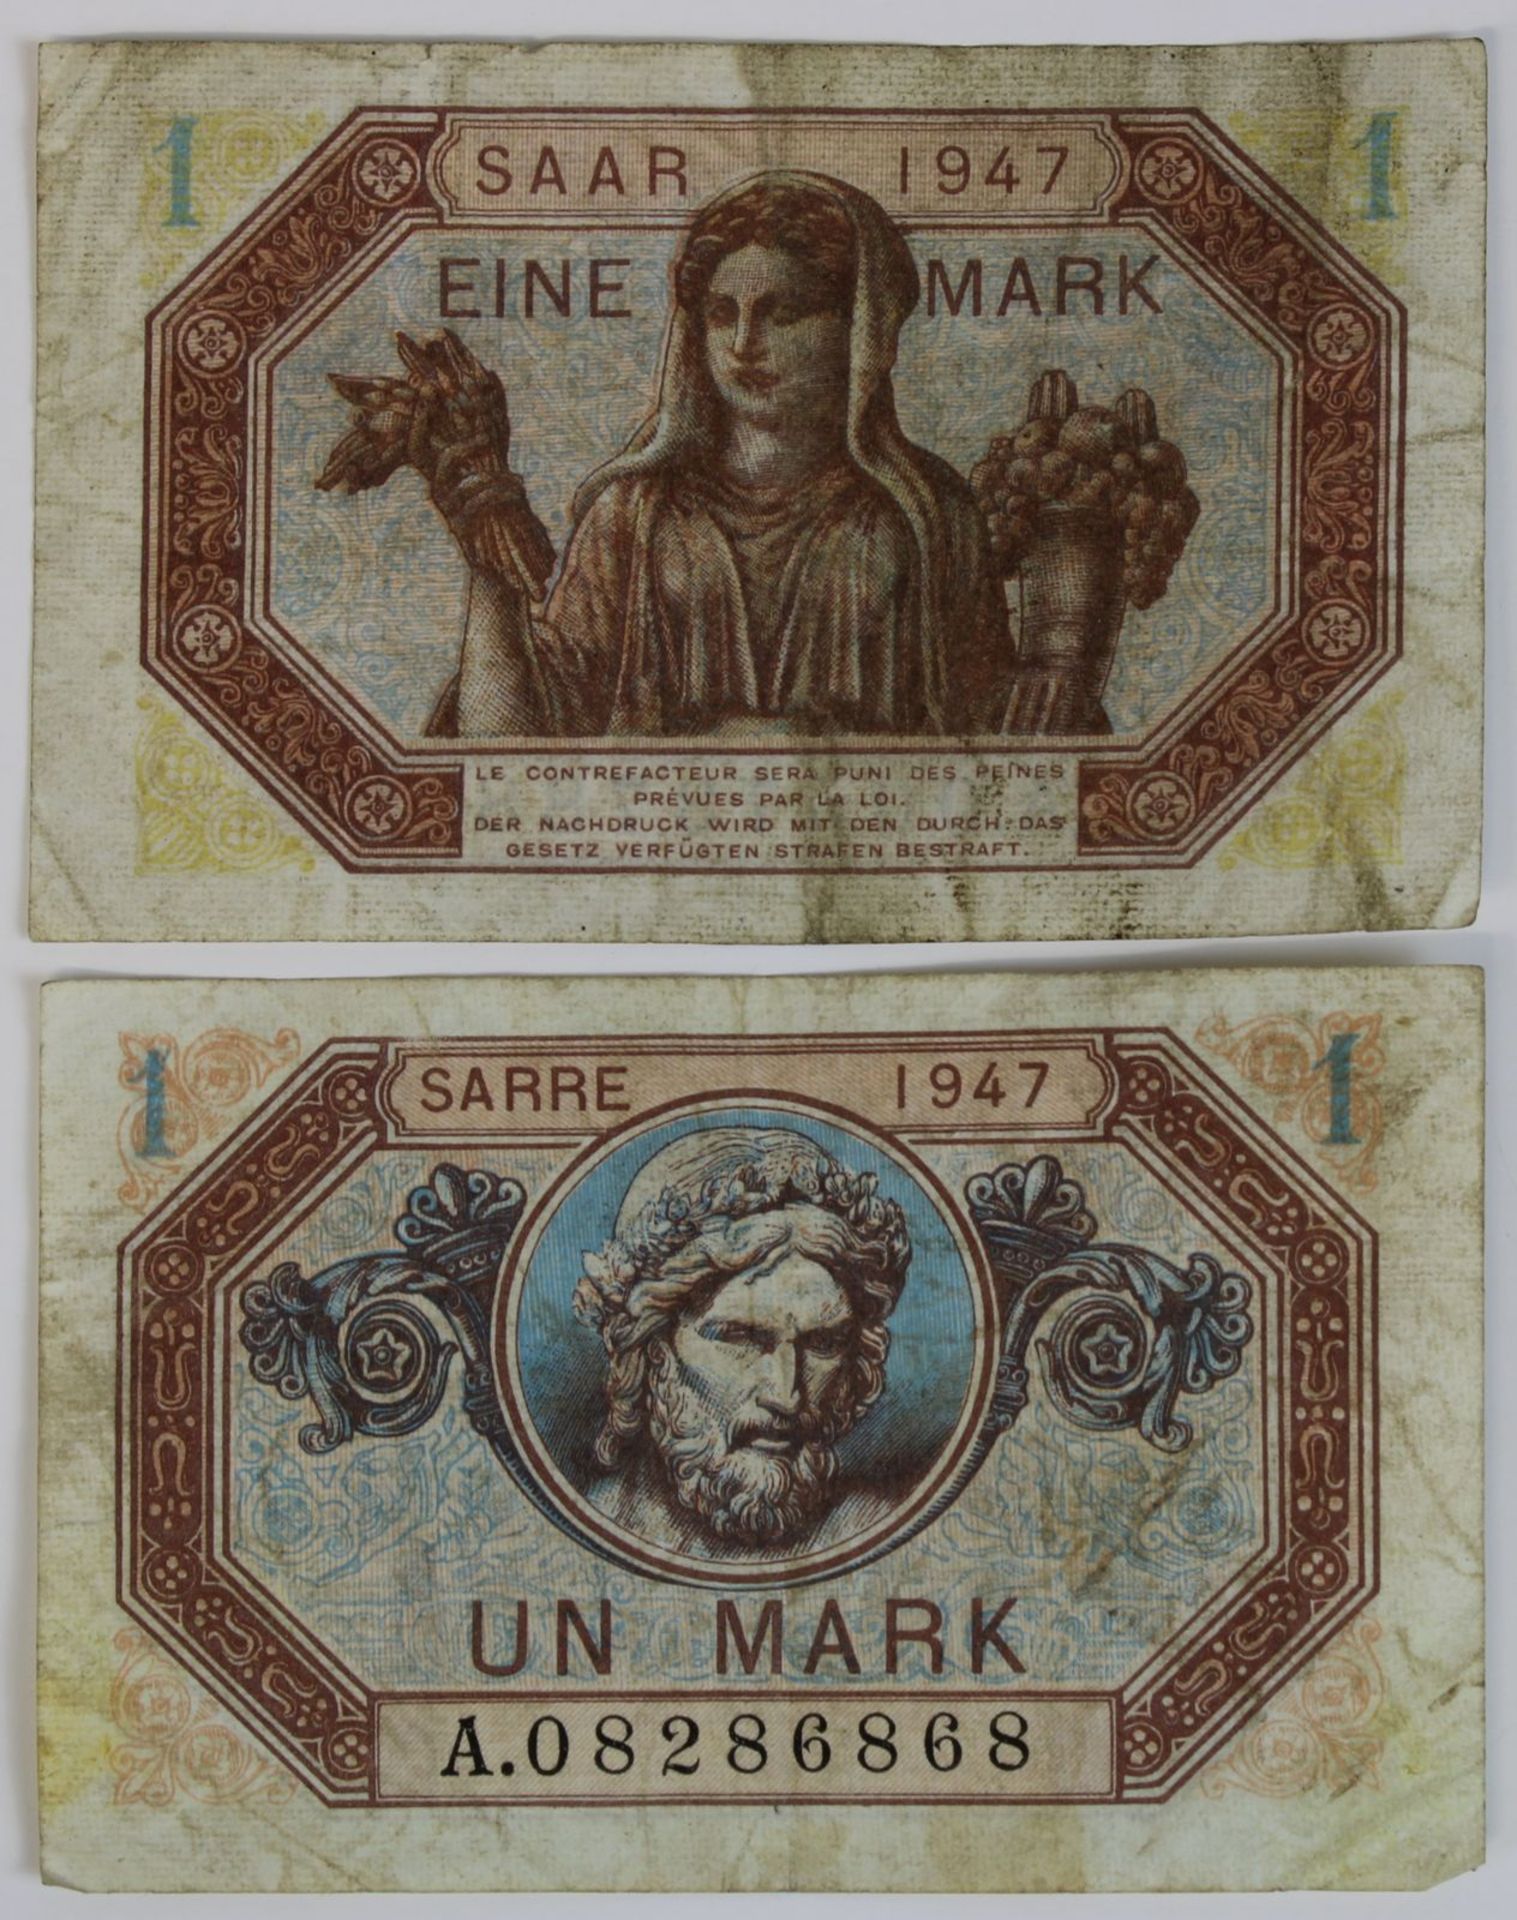 Zwei Banknoten zu einer Mark, Saar 1947, Vorderseite mit französischer Beschriftung, Rückseite mit - Image 2 of 2